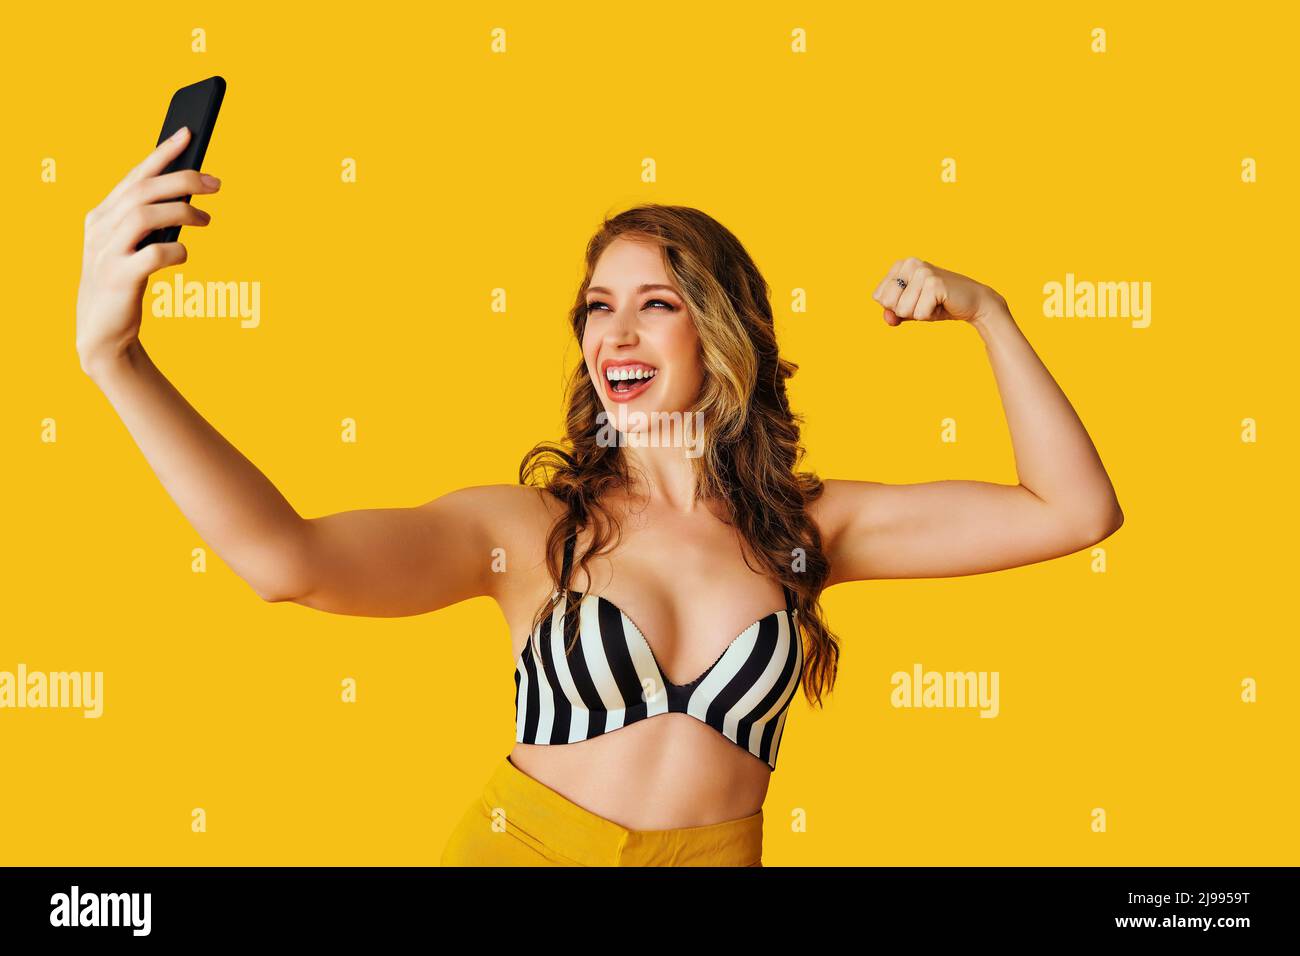 ritratto di bella giovane donna texting flirt bicep braccio muscolo selfie messaggio foto con smartphone su sfondo giallo studio Foto Stock